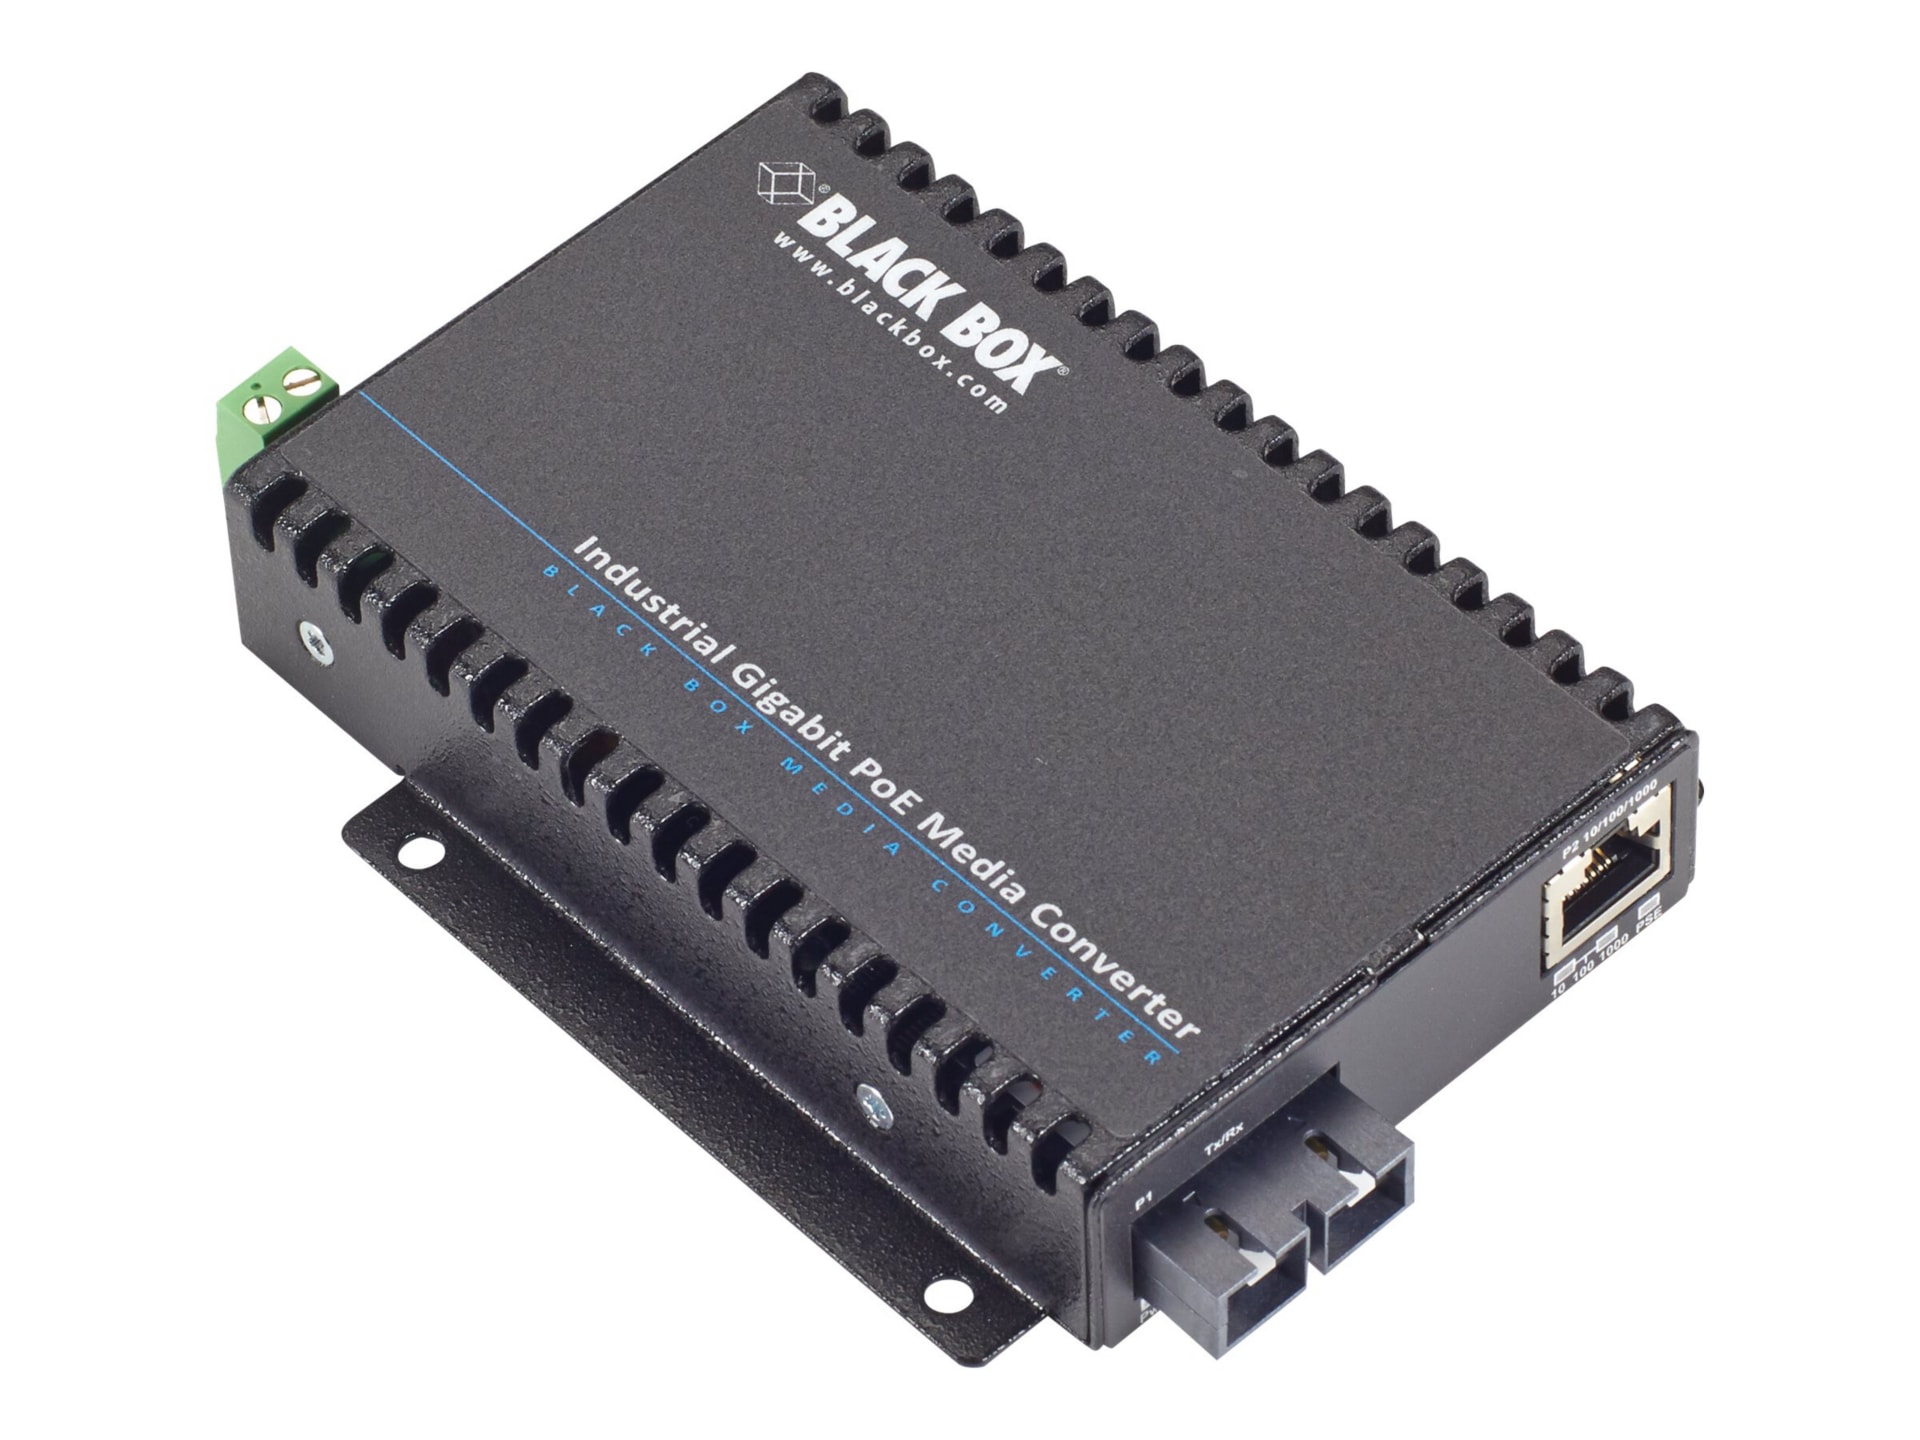 Black Box Industrial PoE Gigabit Ethernet Media Converter - fiber media con